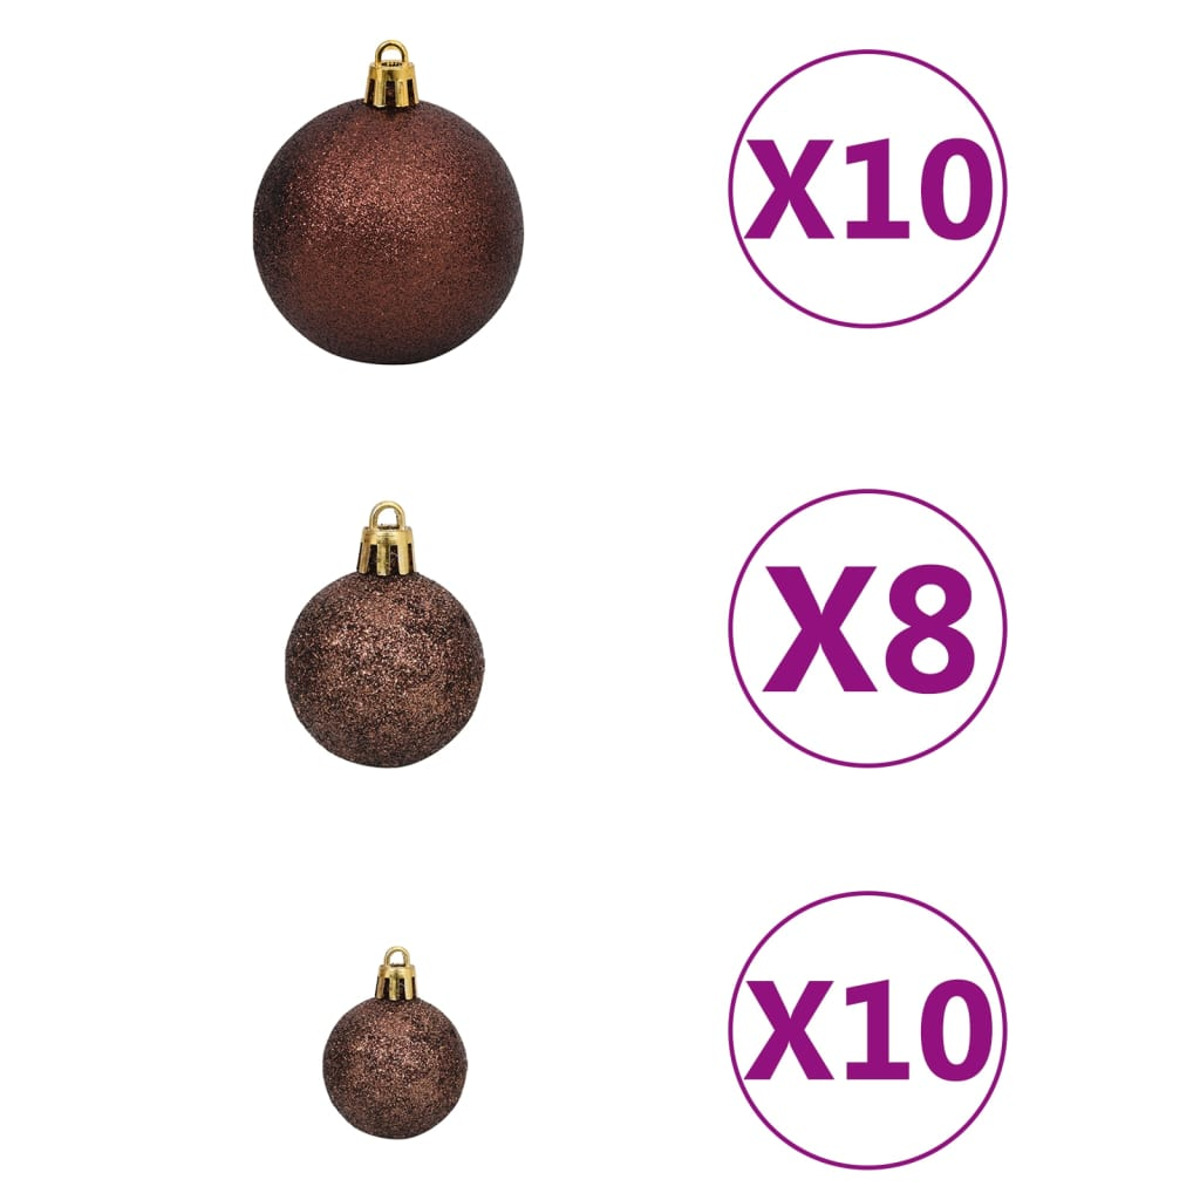 VIDAXL 3077550 Weihnachtsbaum